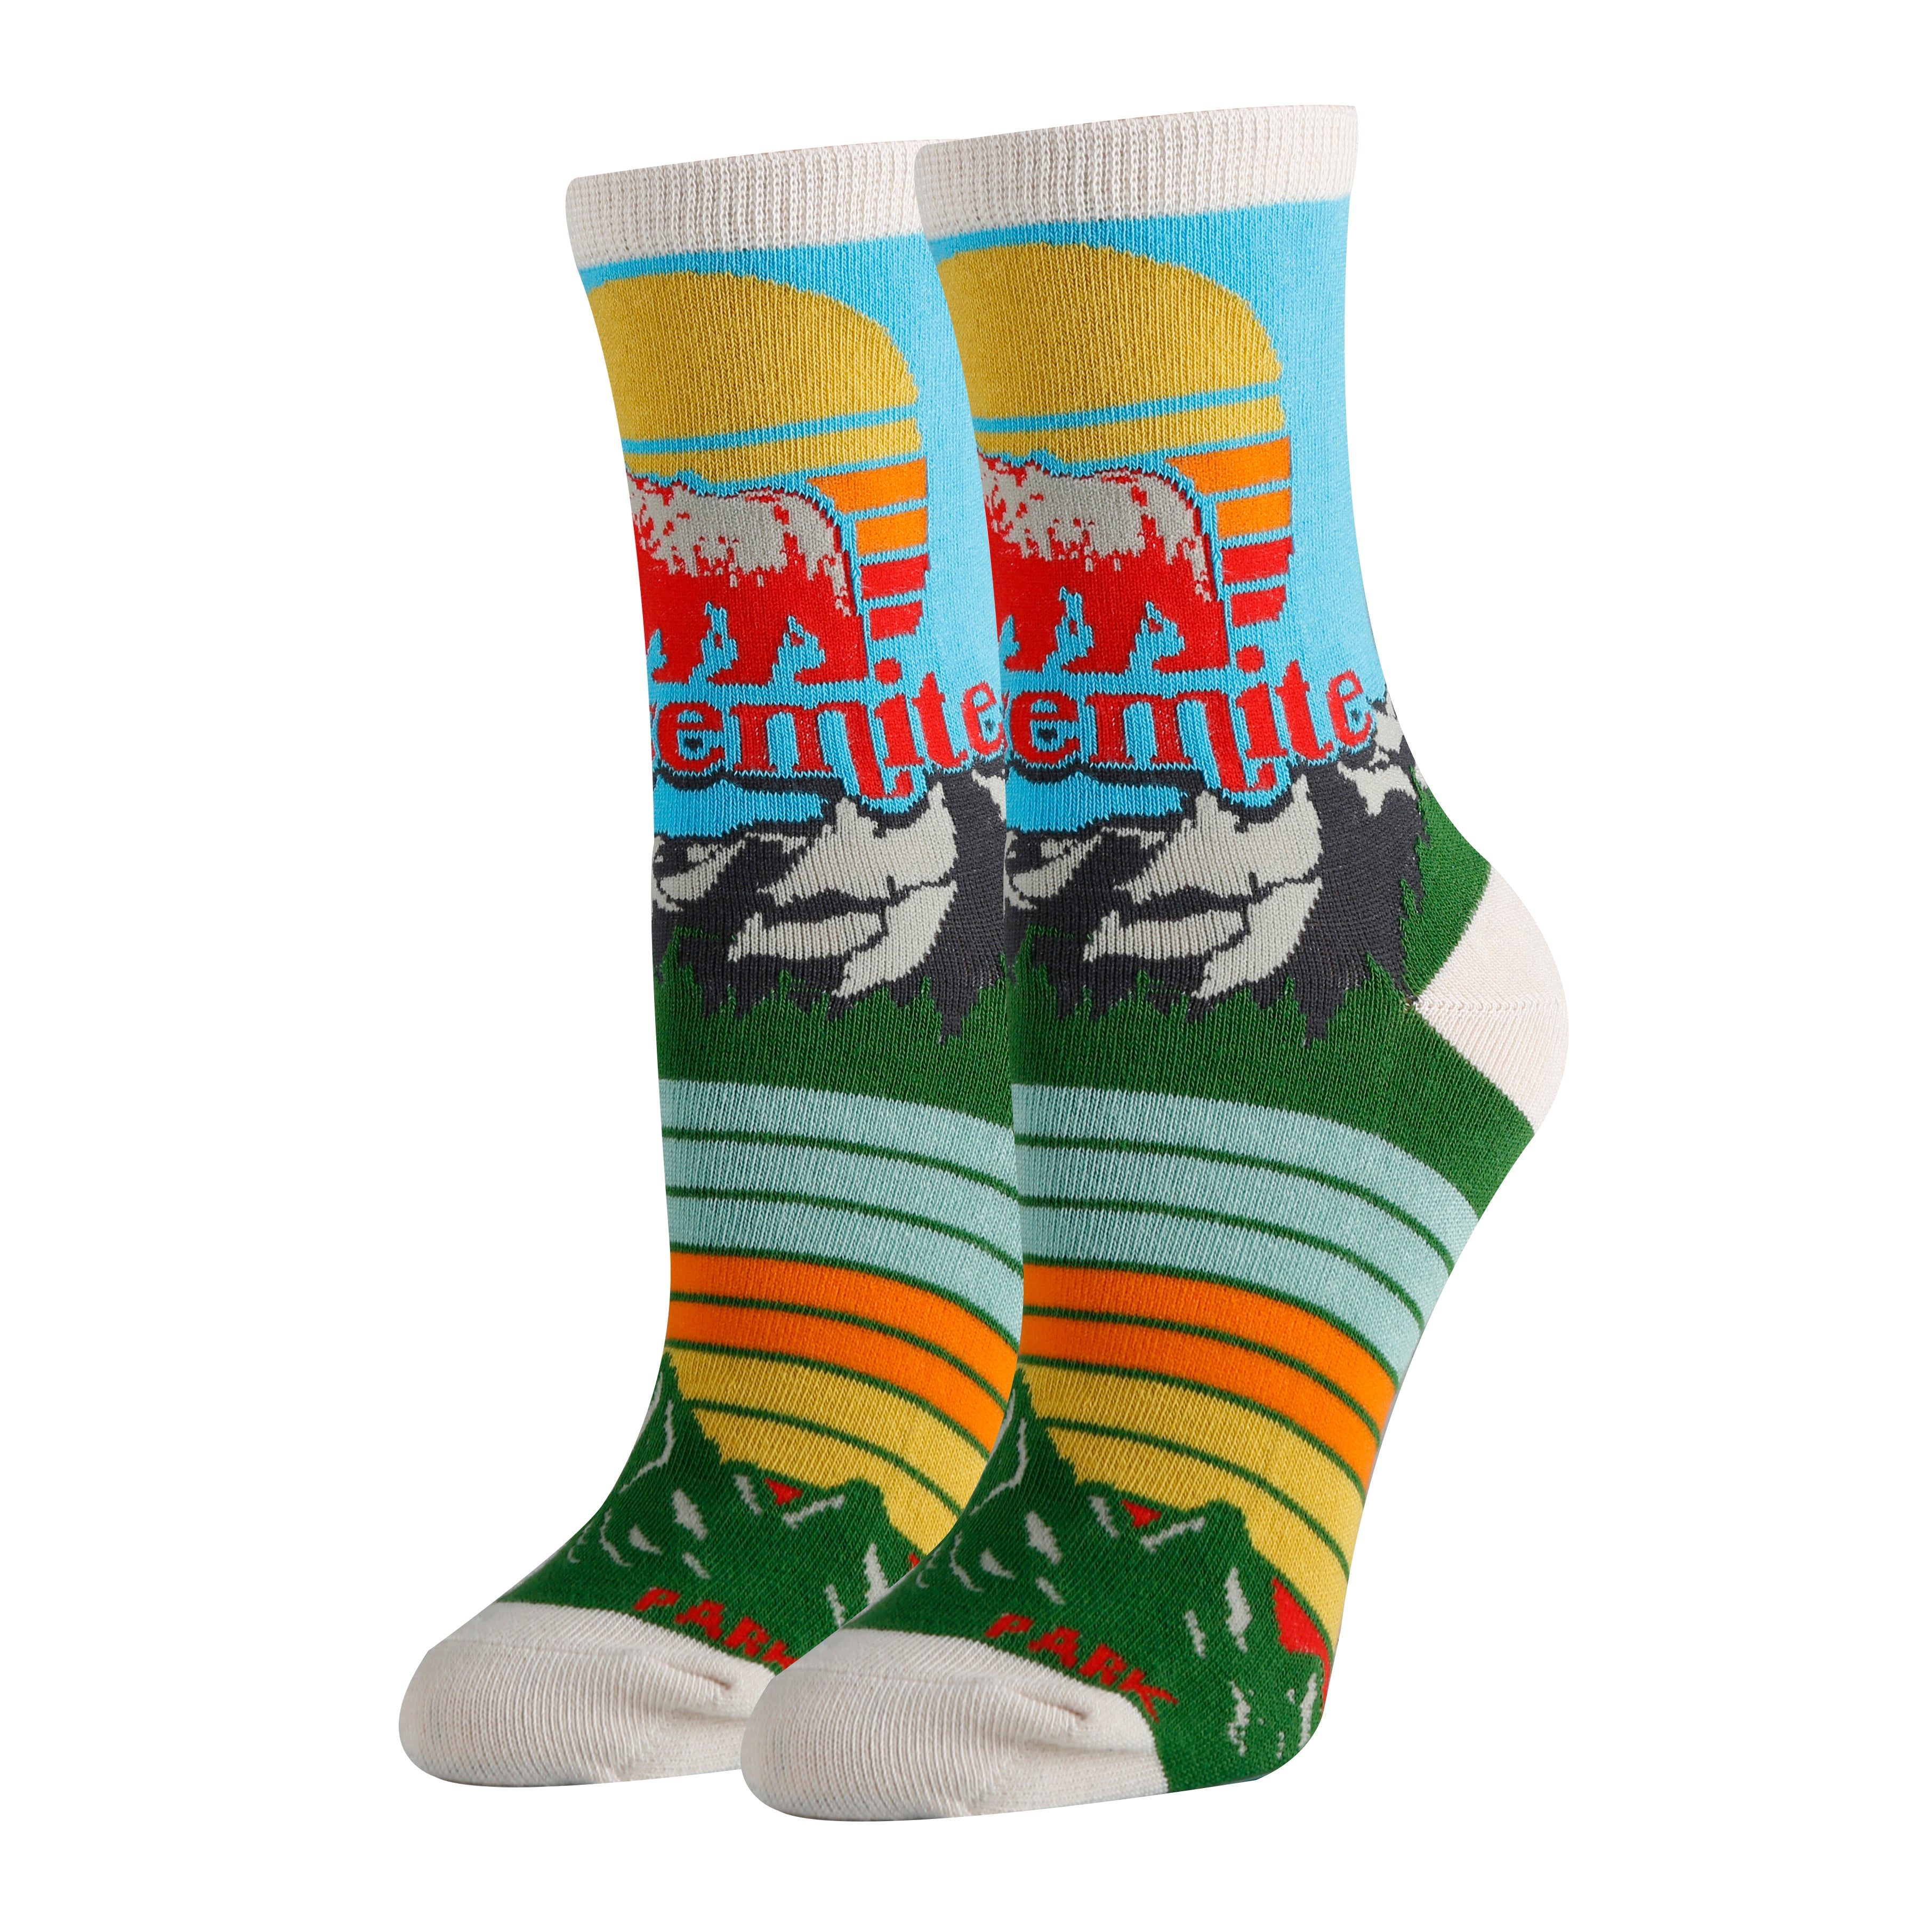 Yosemite Socks | Novelty Crew Socks For Women